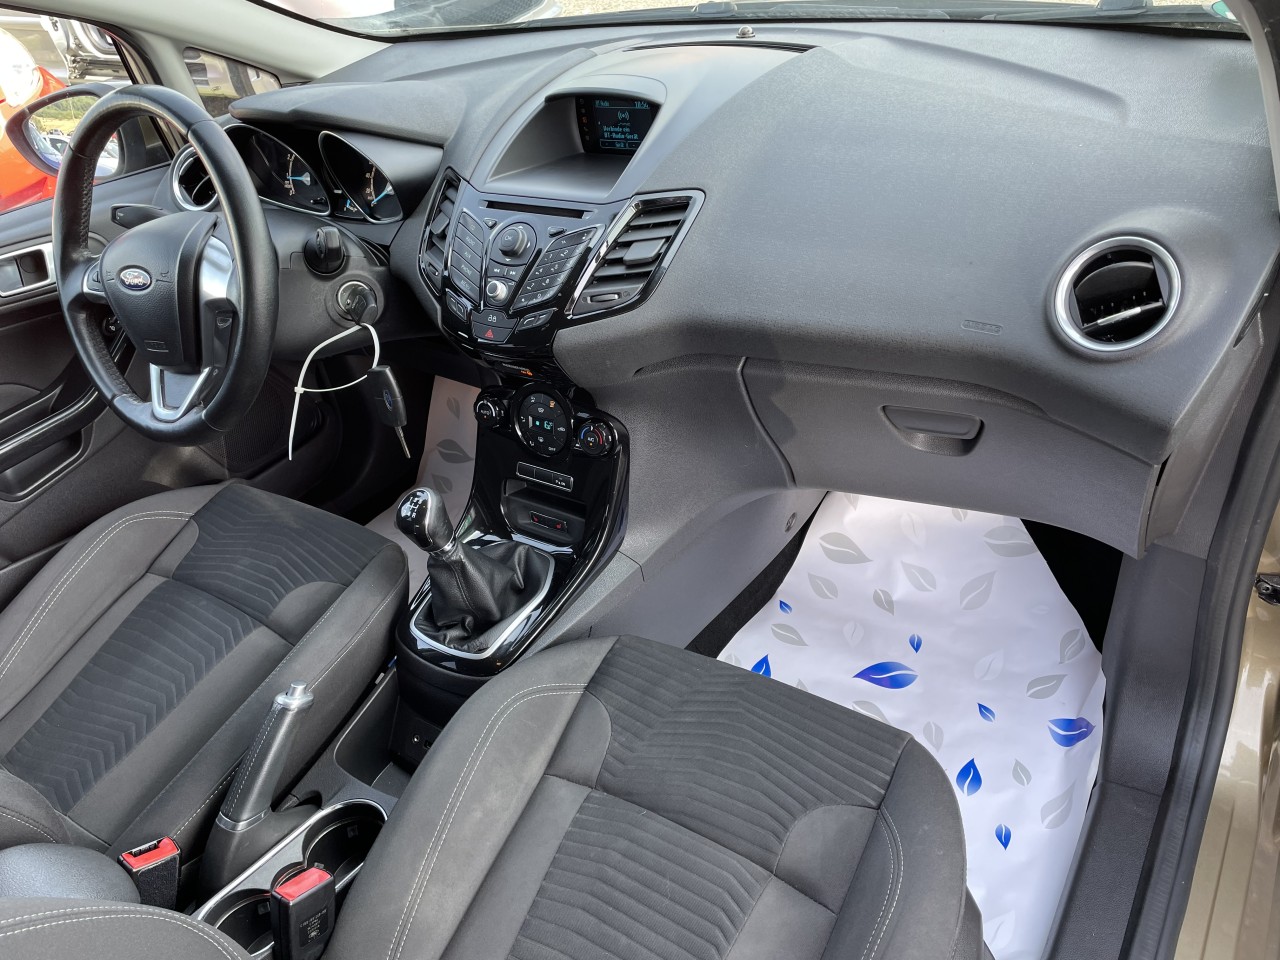 Ford Fiesta 1.0i Xenon Led Clima PDC euro 5 2015